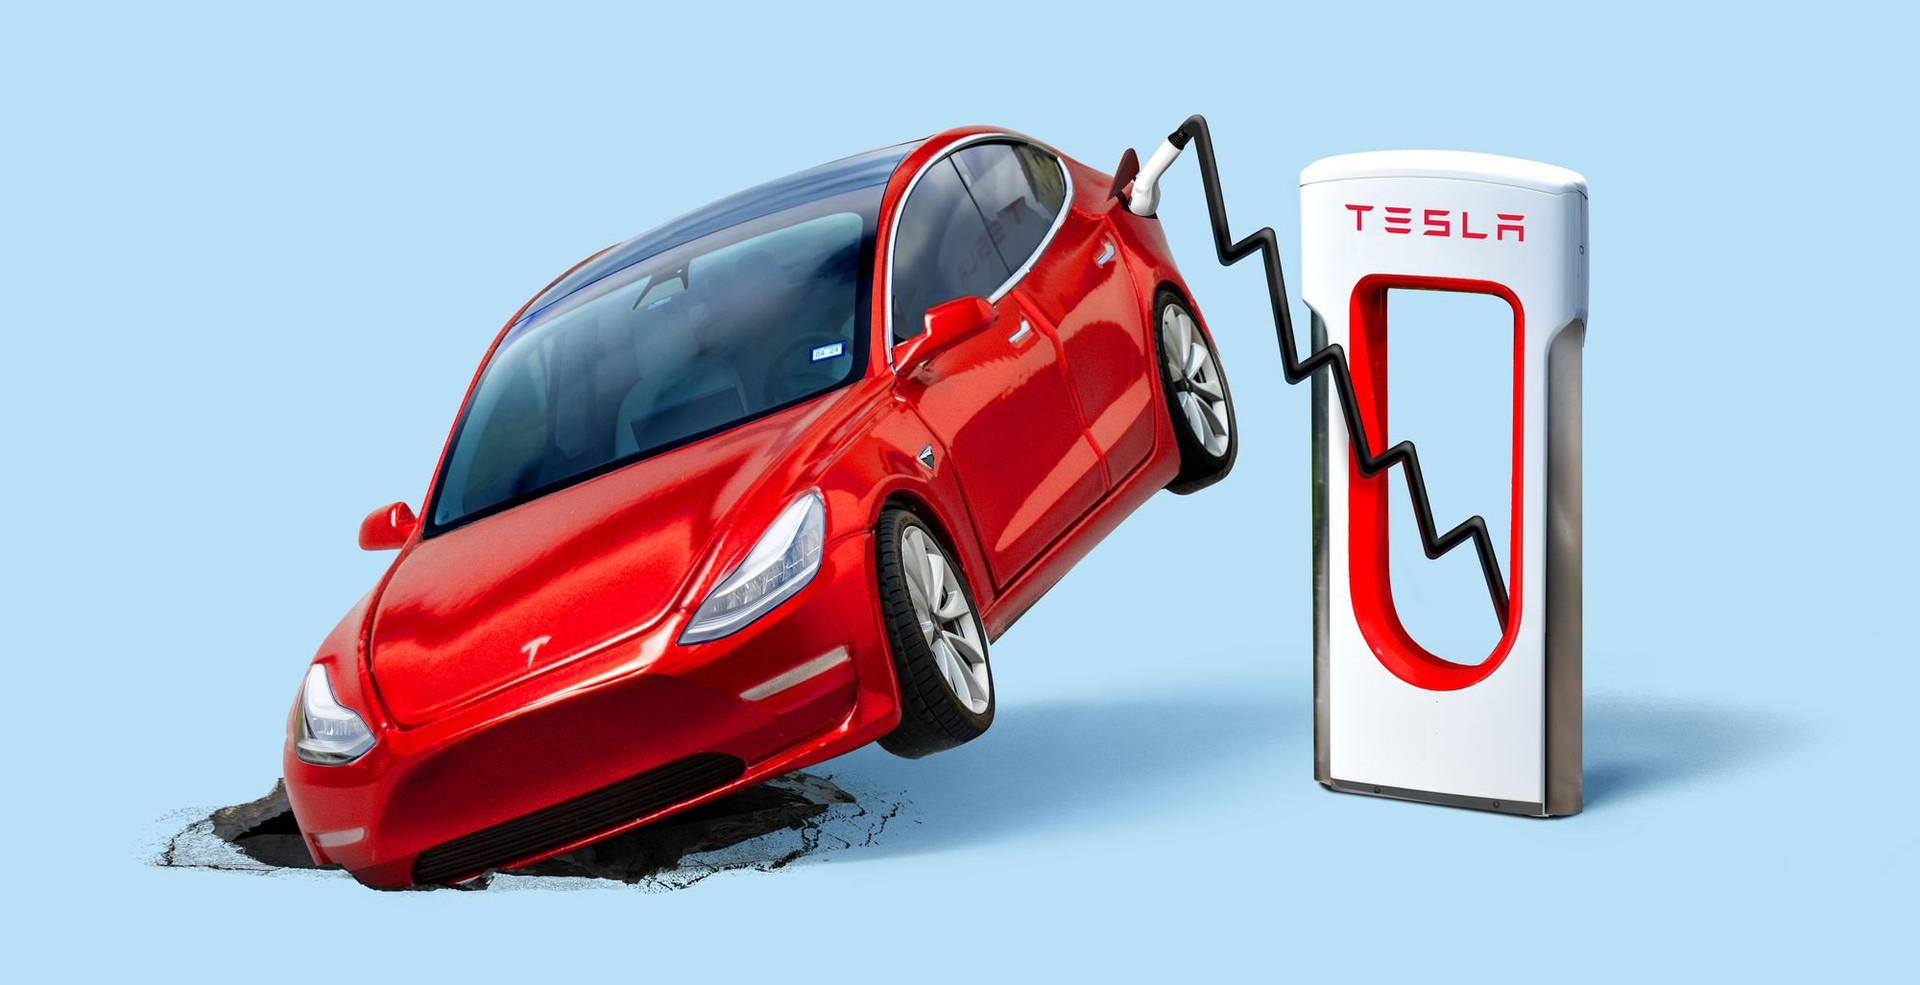 Tesla tụt dốc không phanh sau 3 năm huy hoàng: Giới đầu tư ngồi trên đống lửa bởi những toan tính “không giống ai” của Elon Musk- Ảnh 1.